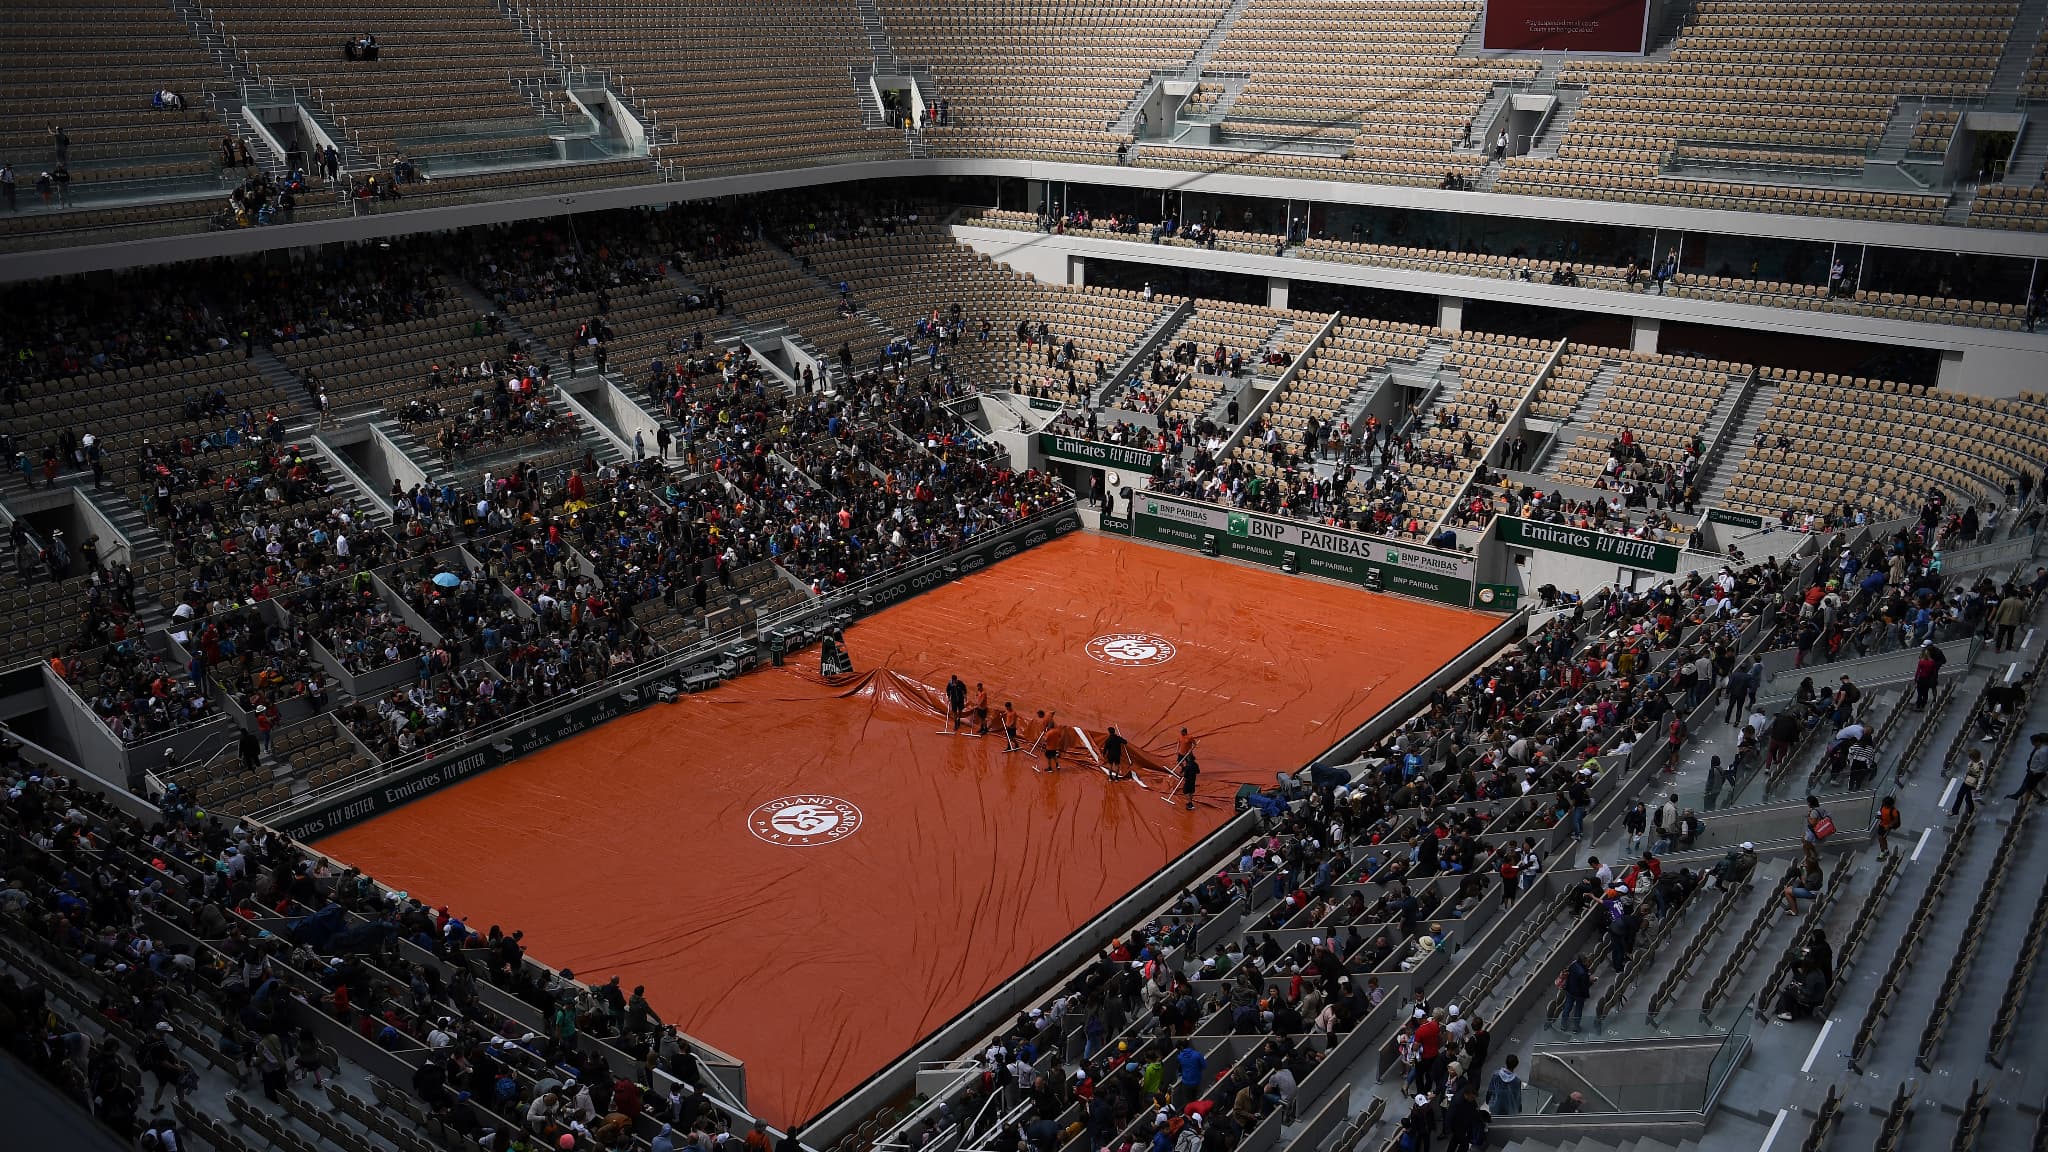 Roland-Garros: la billetterie ouverte mais limitée, qui a droit aux